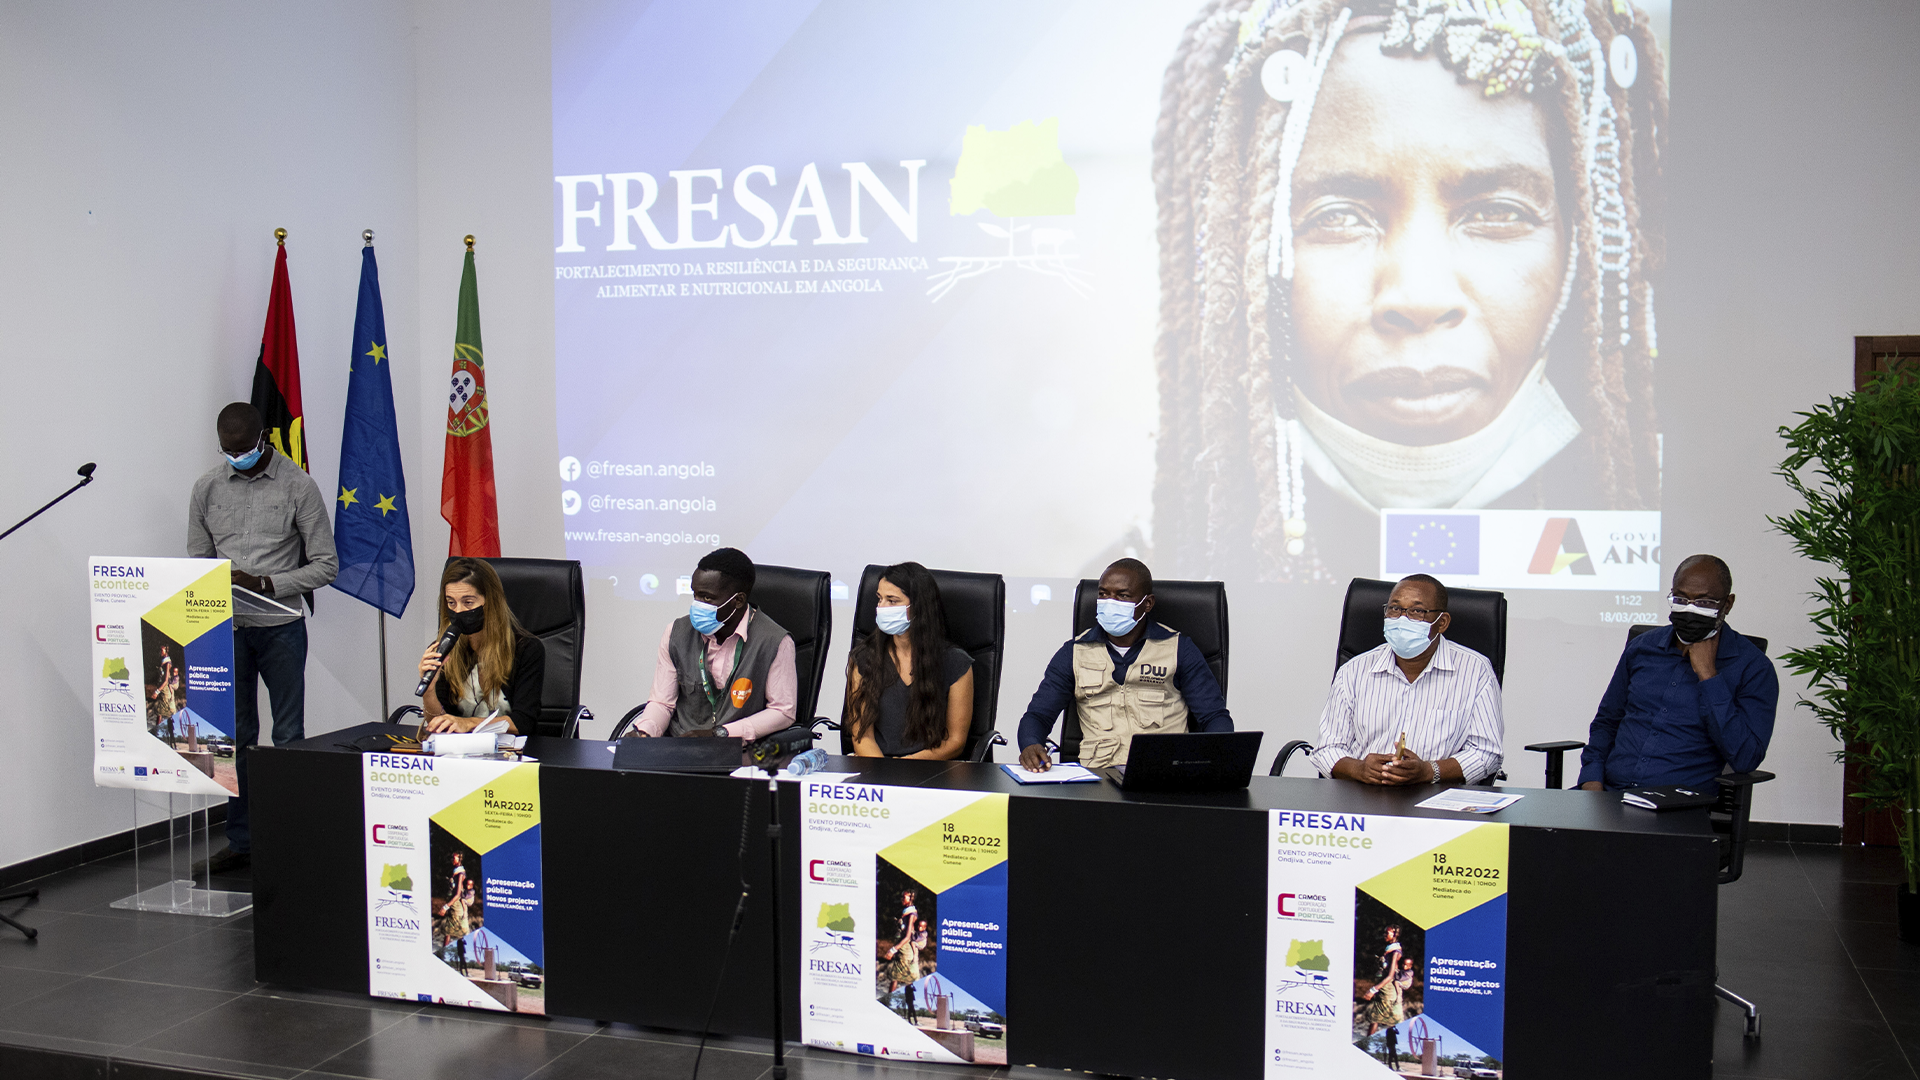 Cinco novos projectos financiados pela União Europeia, FRESAN/Camões, I.P. apresentados no Cunene